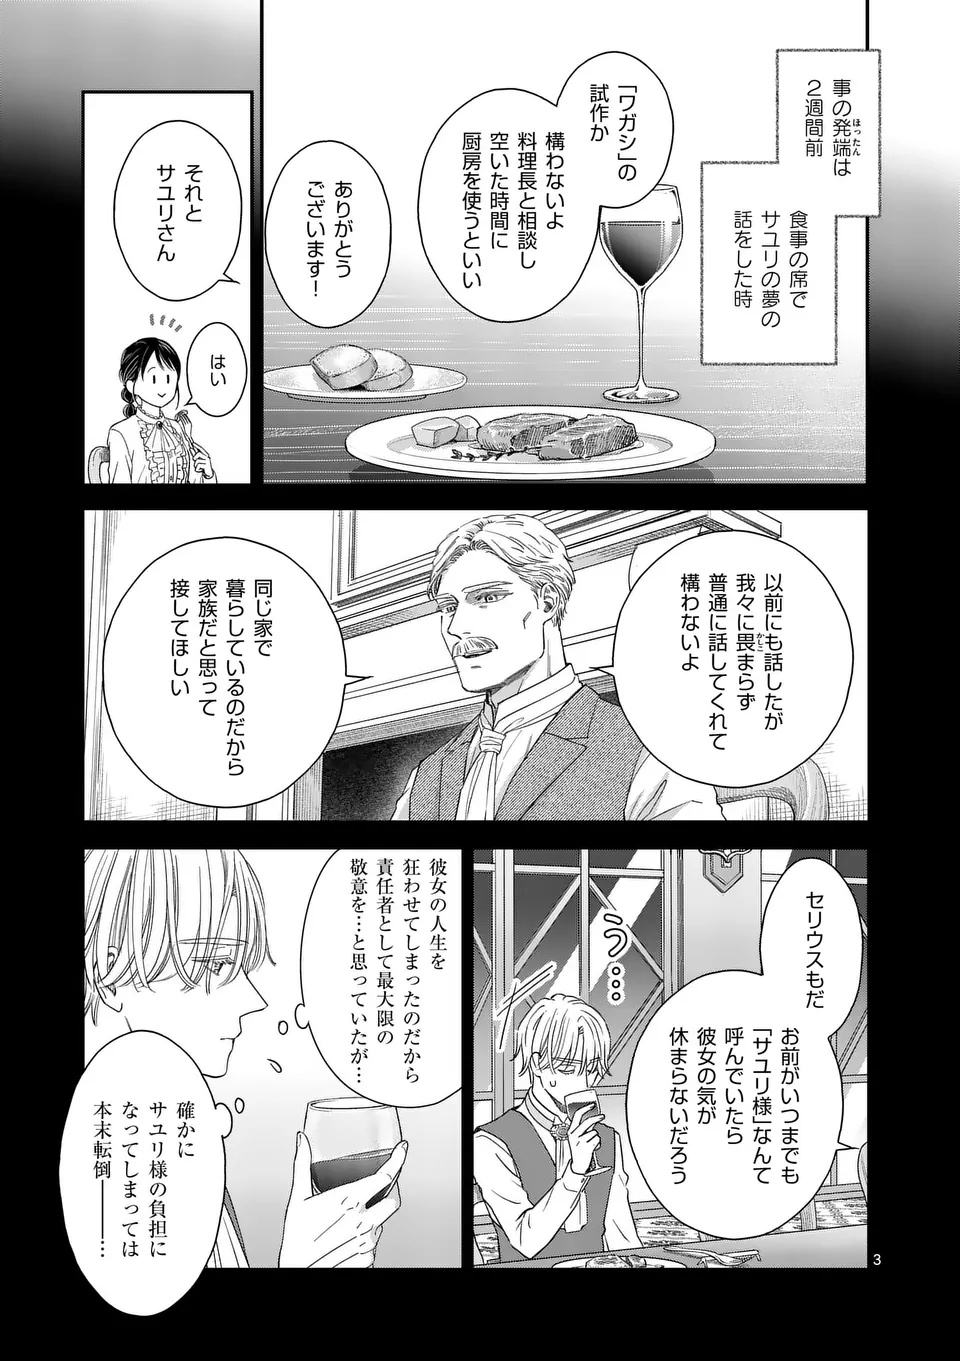 Makizoe de Isekai ni Yobidasareta no de, Sekai Kanmushi shite Wagashi Tsukurimasu - Chapter 3 - Page 3